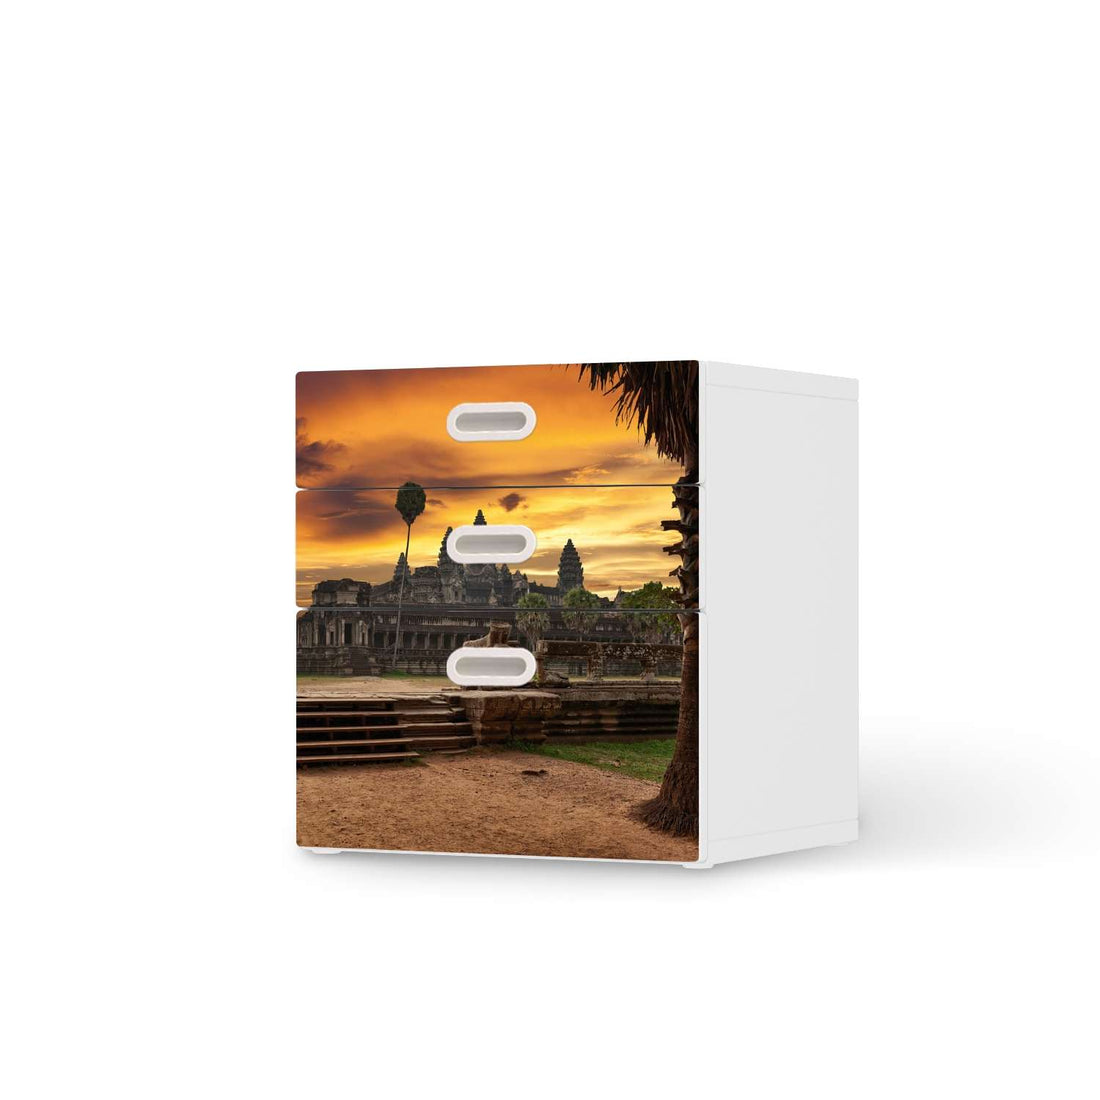 Folie für Möbel Angkor Wat - IKEA Stuva / Fritids Kommode - 3 Schubladen  - weiss